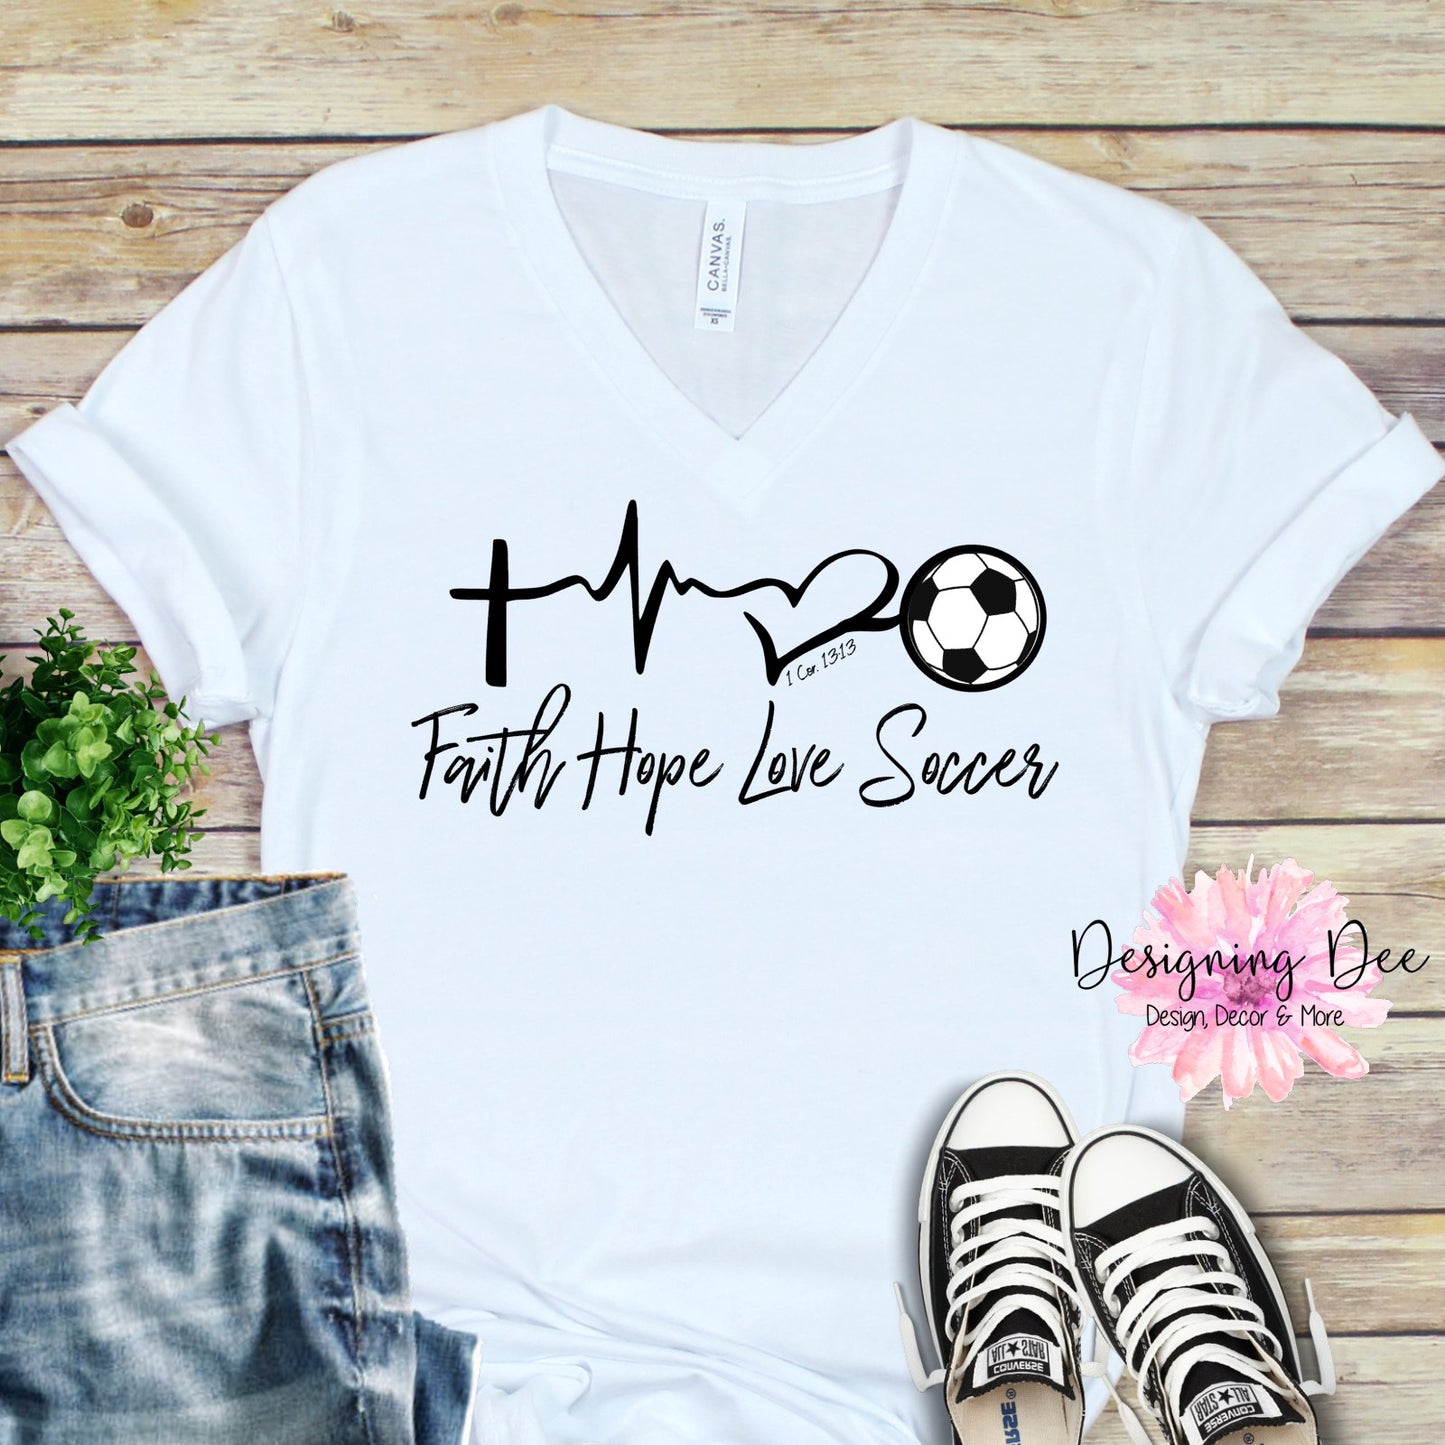 Soccer Mom Shirt, Faith Hope & Love Soccer Shirt